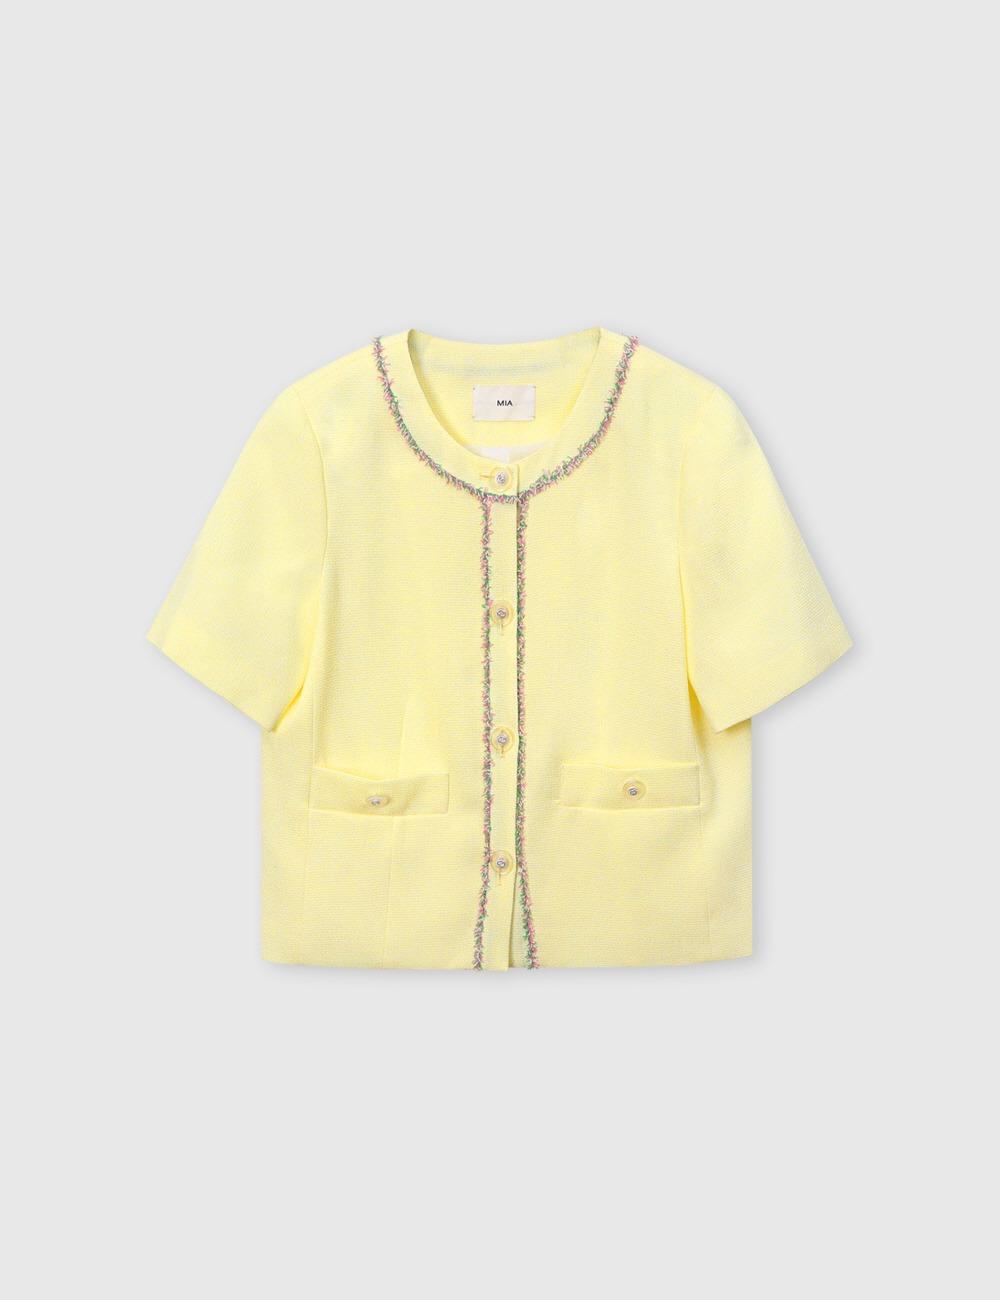 프린지 트위드 자켓[sorbet yellow]